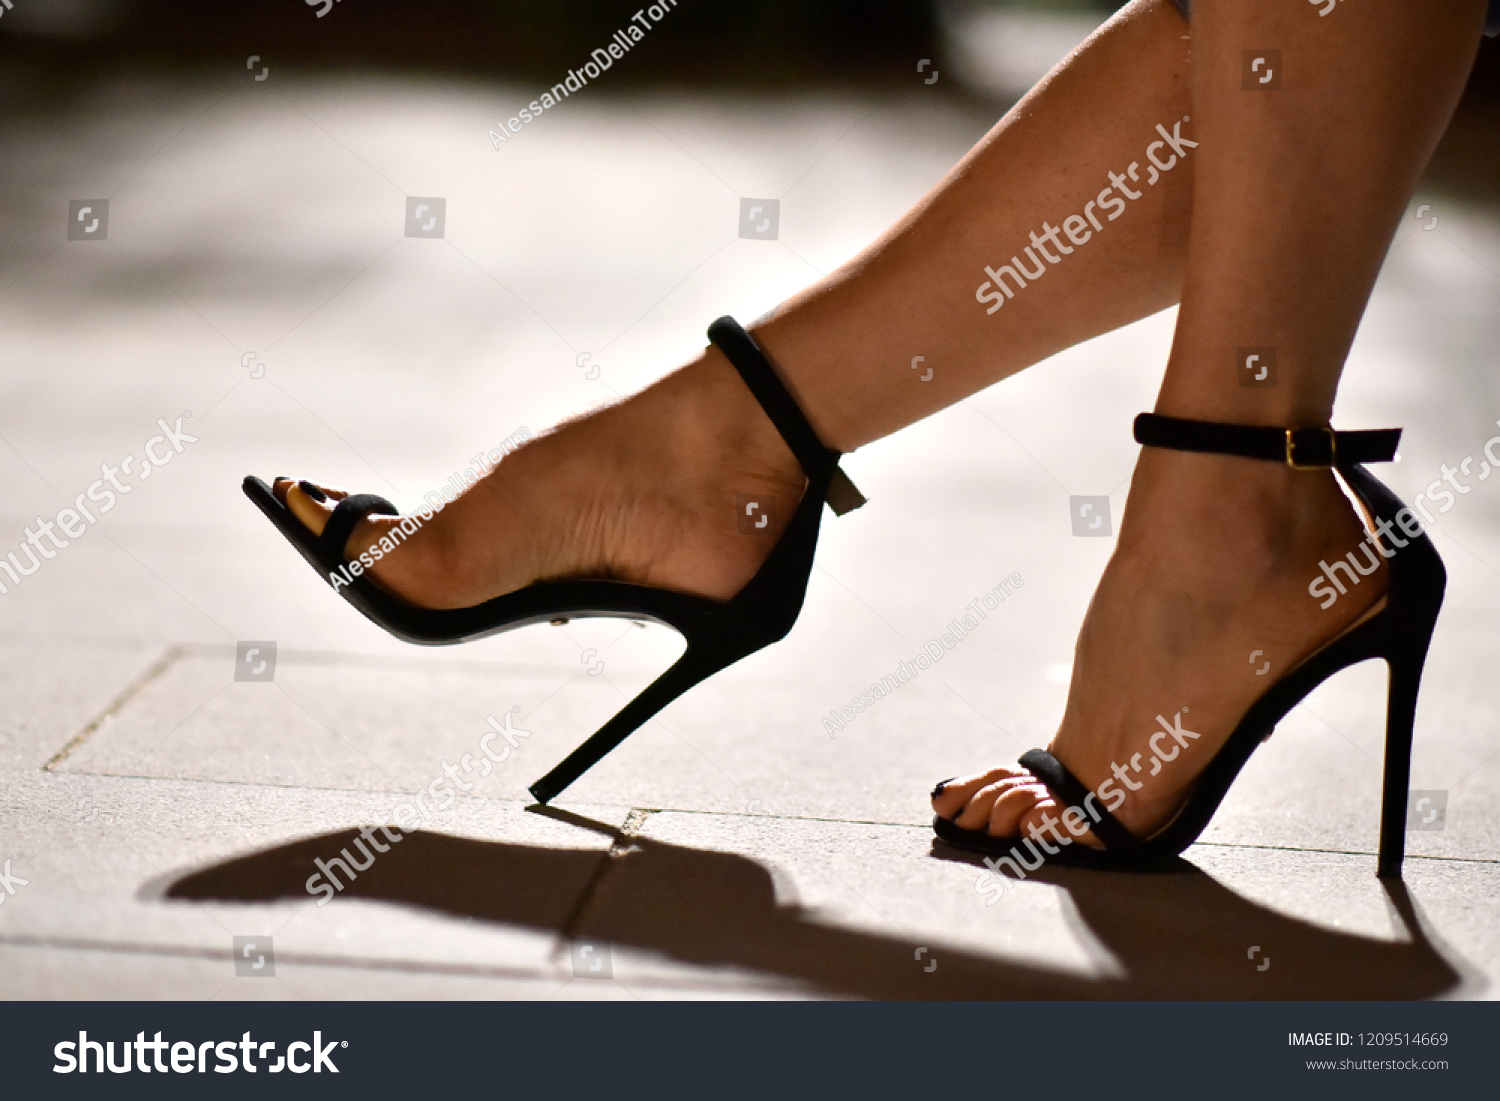 Sexy feet heels